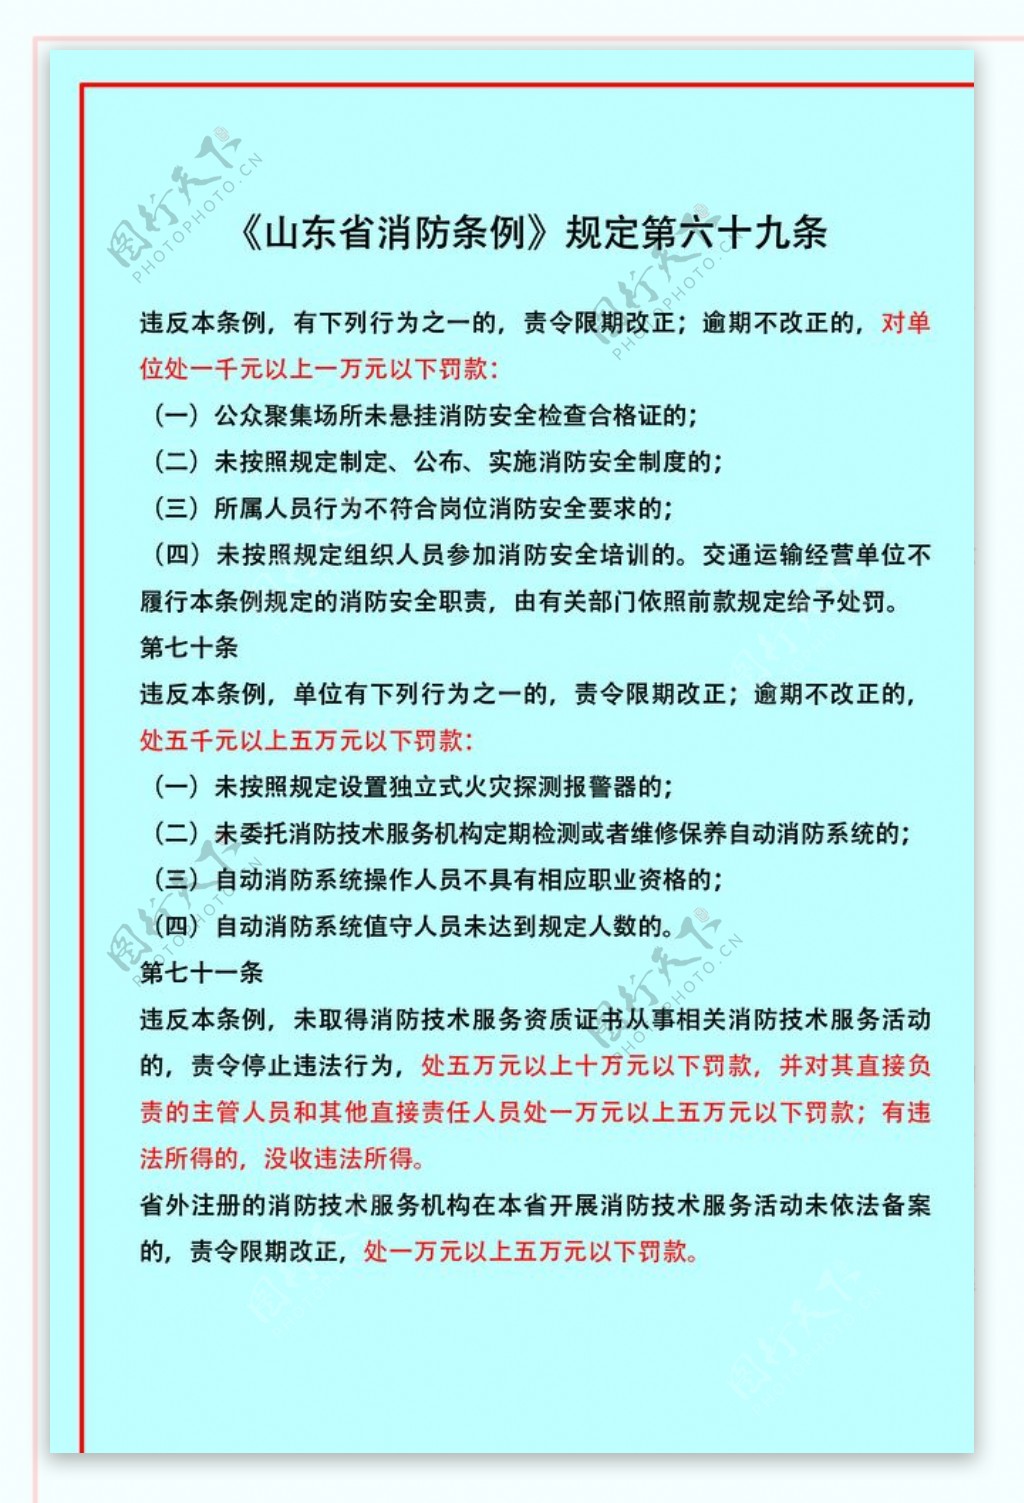 山东省消防条例规定第六十九